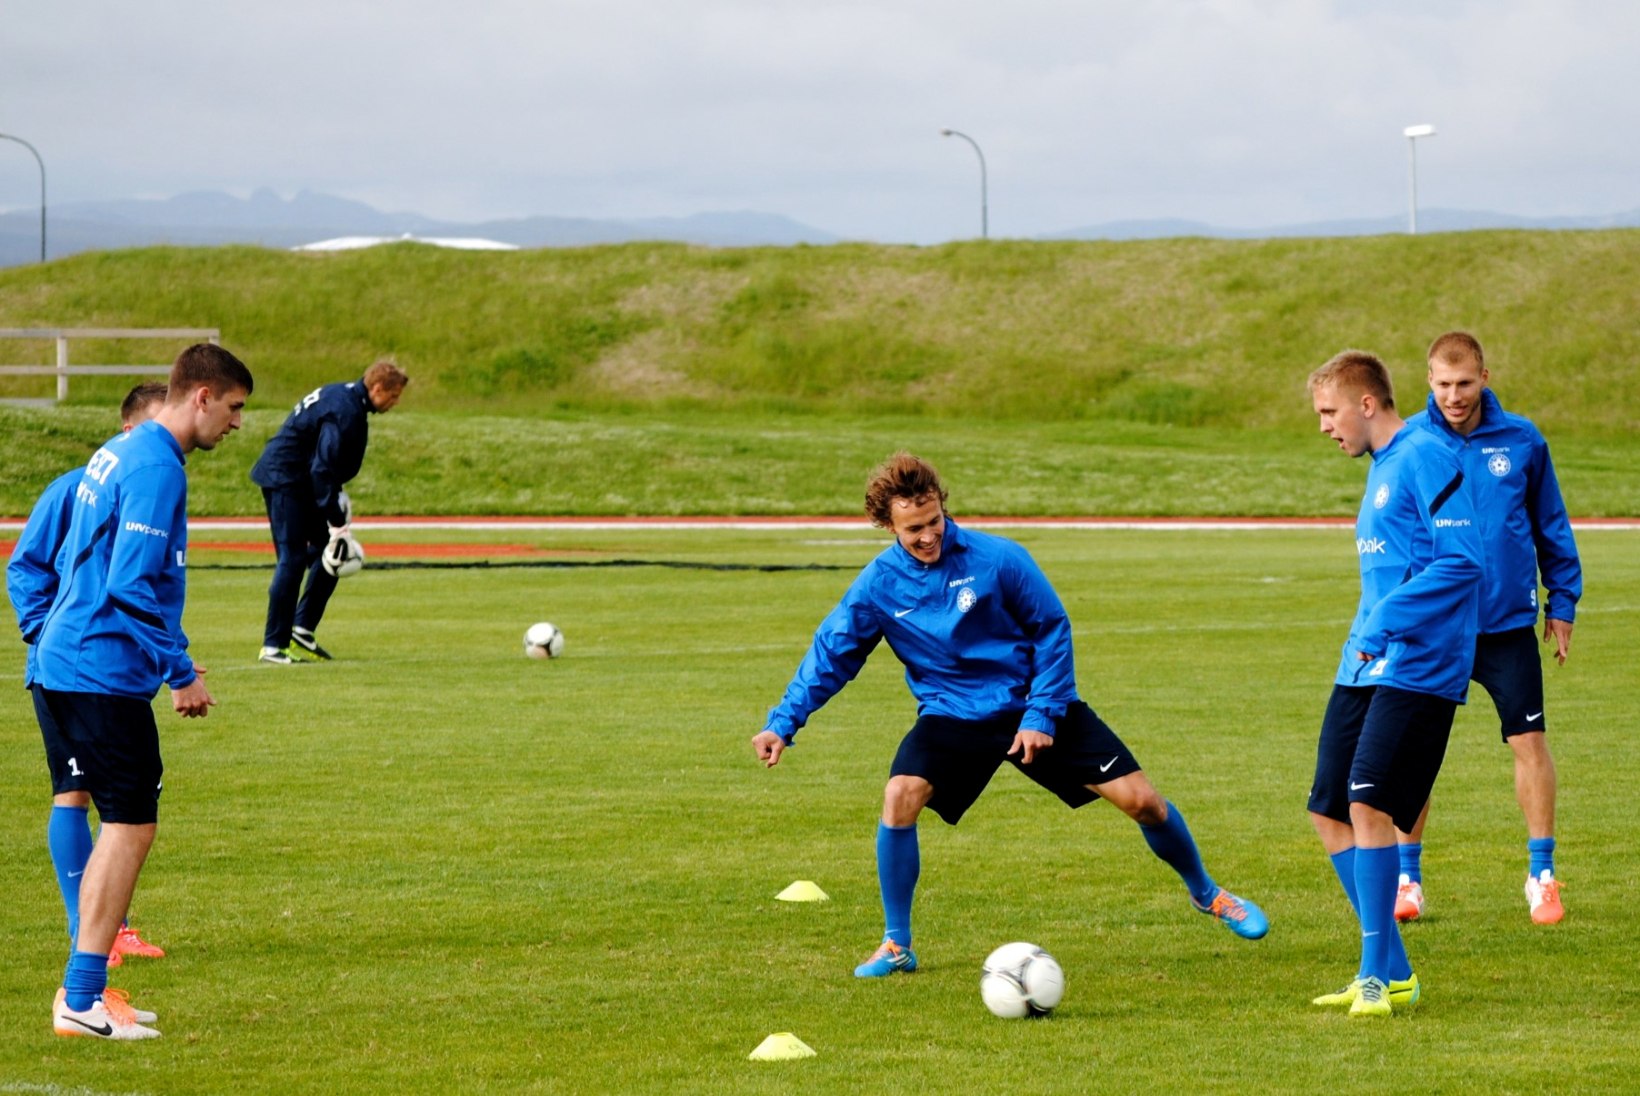 FOTOD: Eesti jalgpallikoondis valmistub heitluseks Islandiga